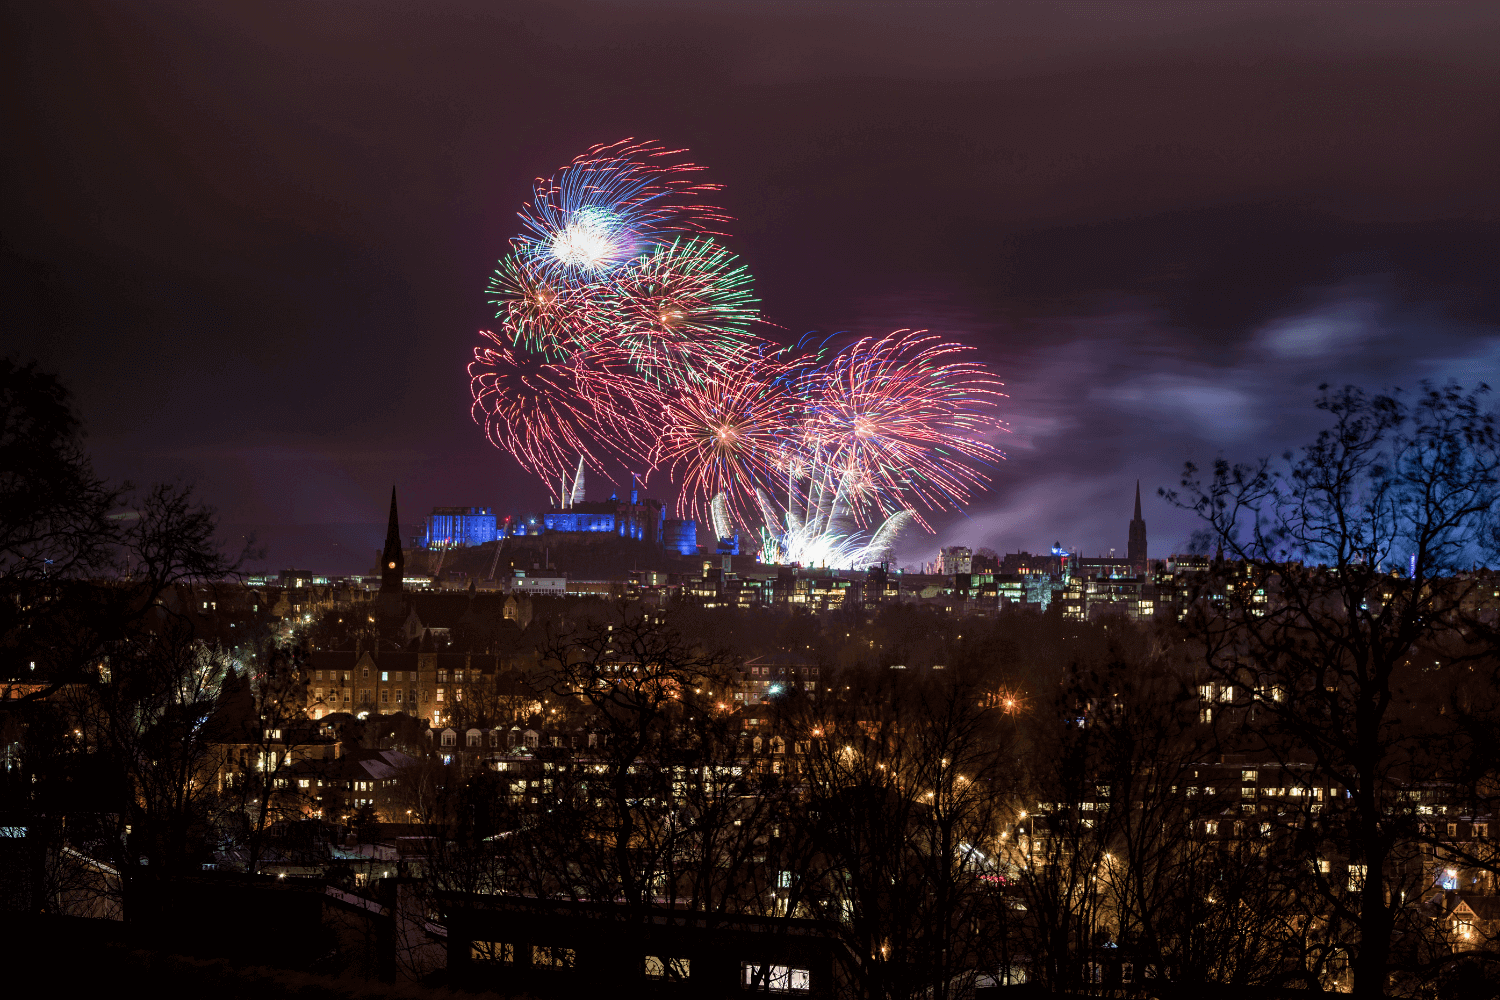 Edinburgh Hogmanay fireworks